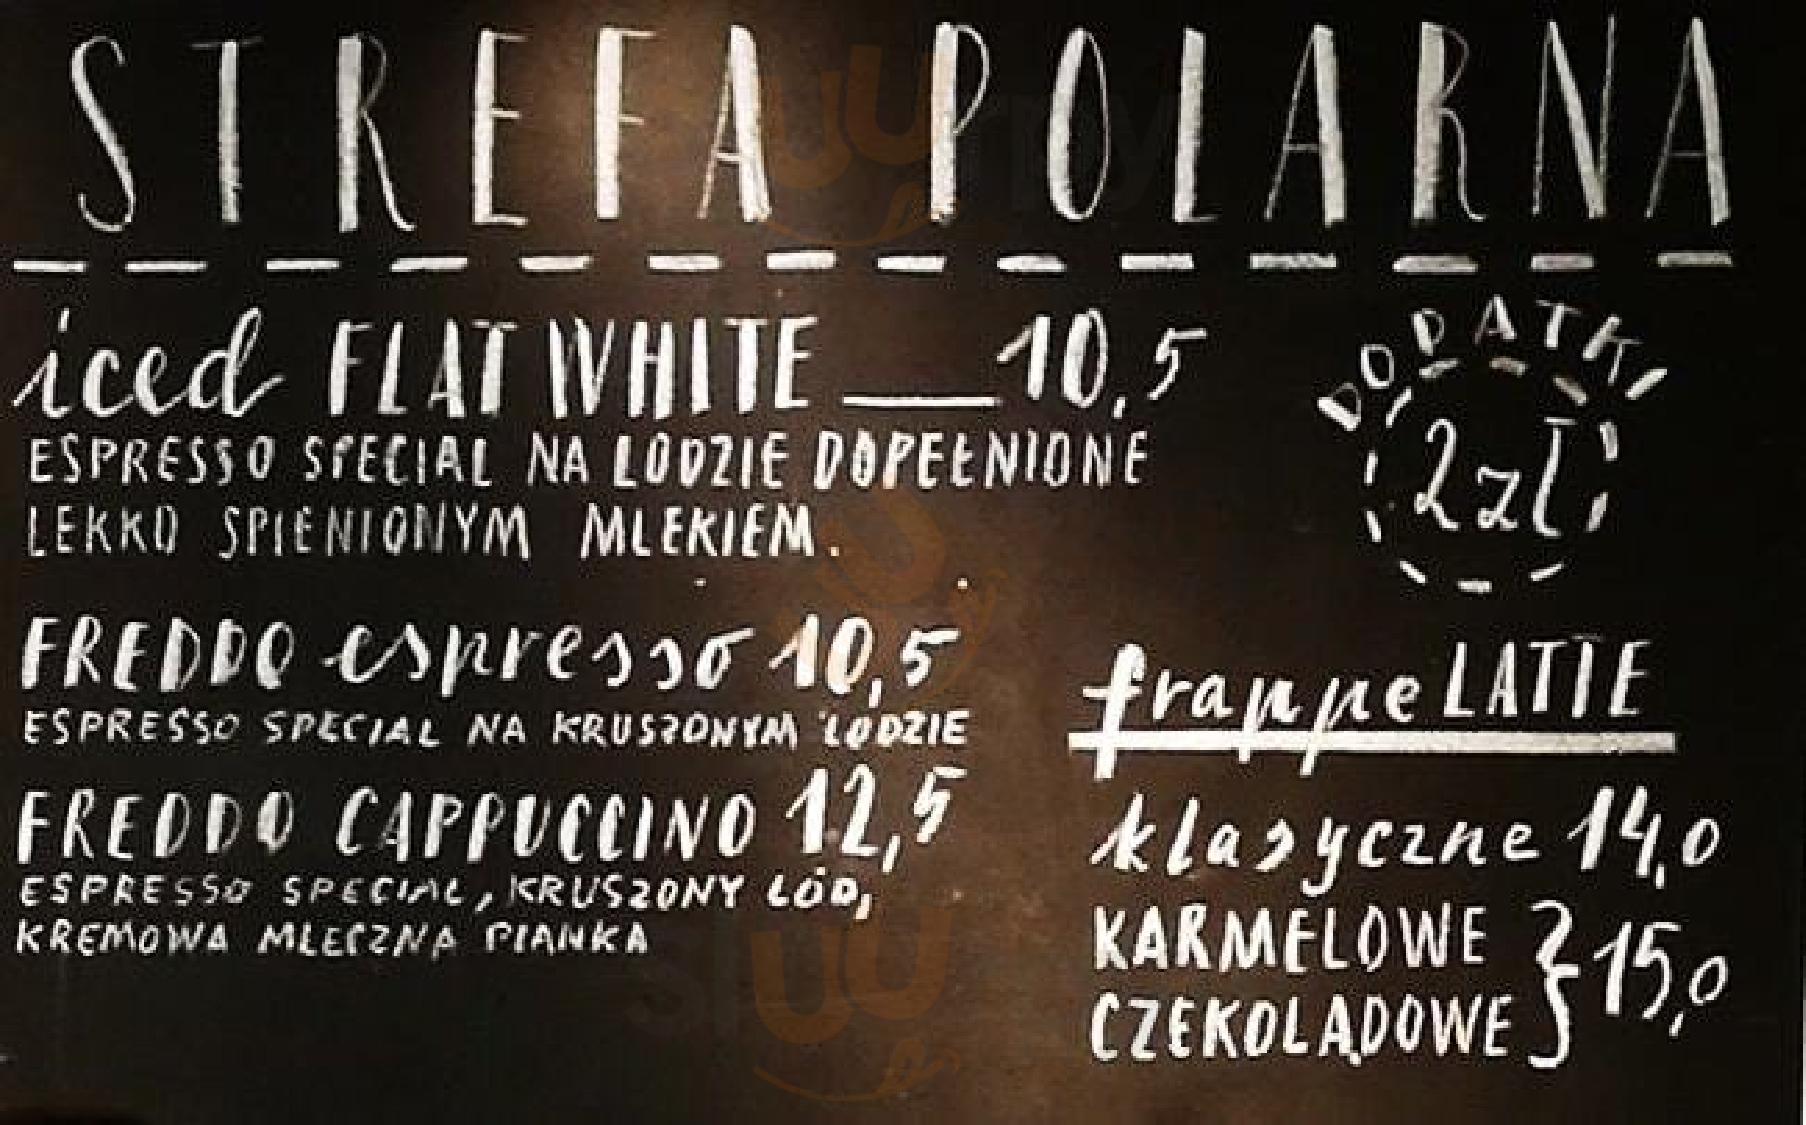 Green Caffe Nero Warszawa Menu - 1